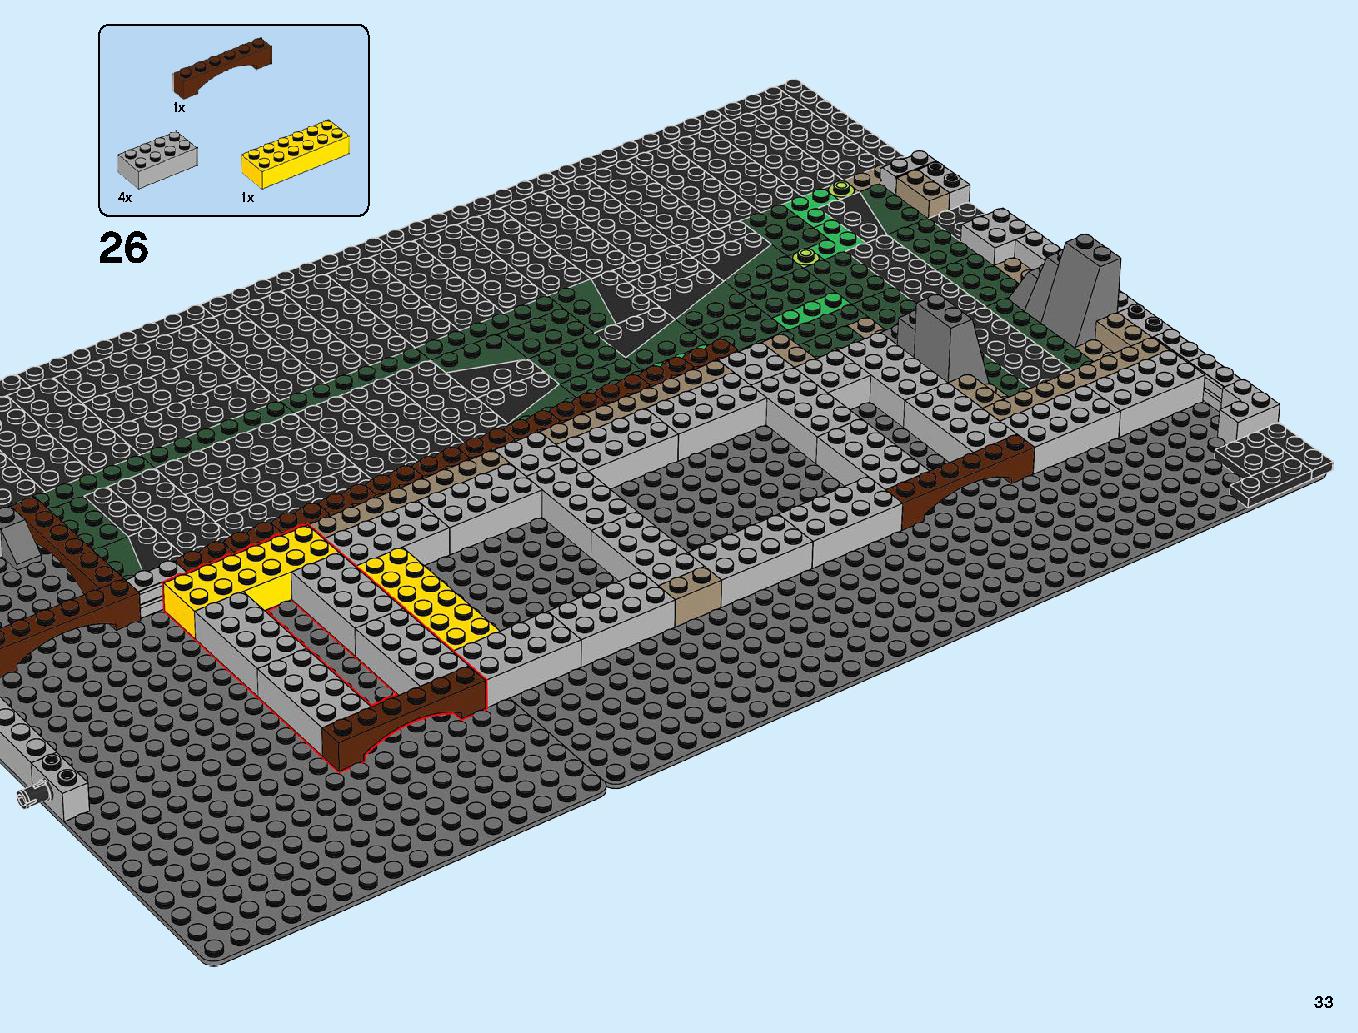 ニンジャゴーシティ・ポートパーク 70657 レゴの商品情報 レゴの説明書・組立方法 33 page